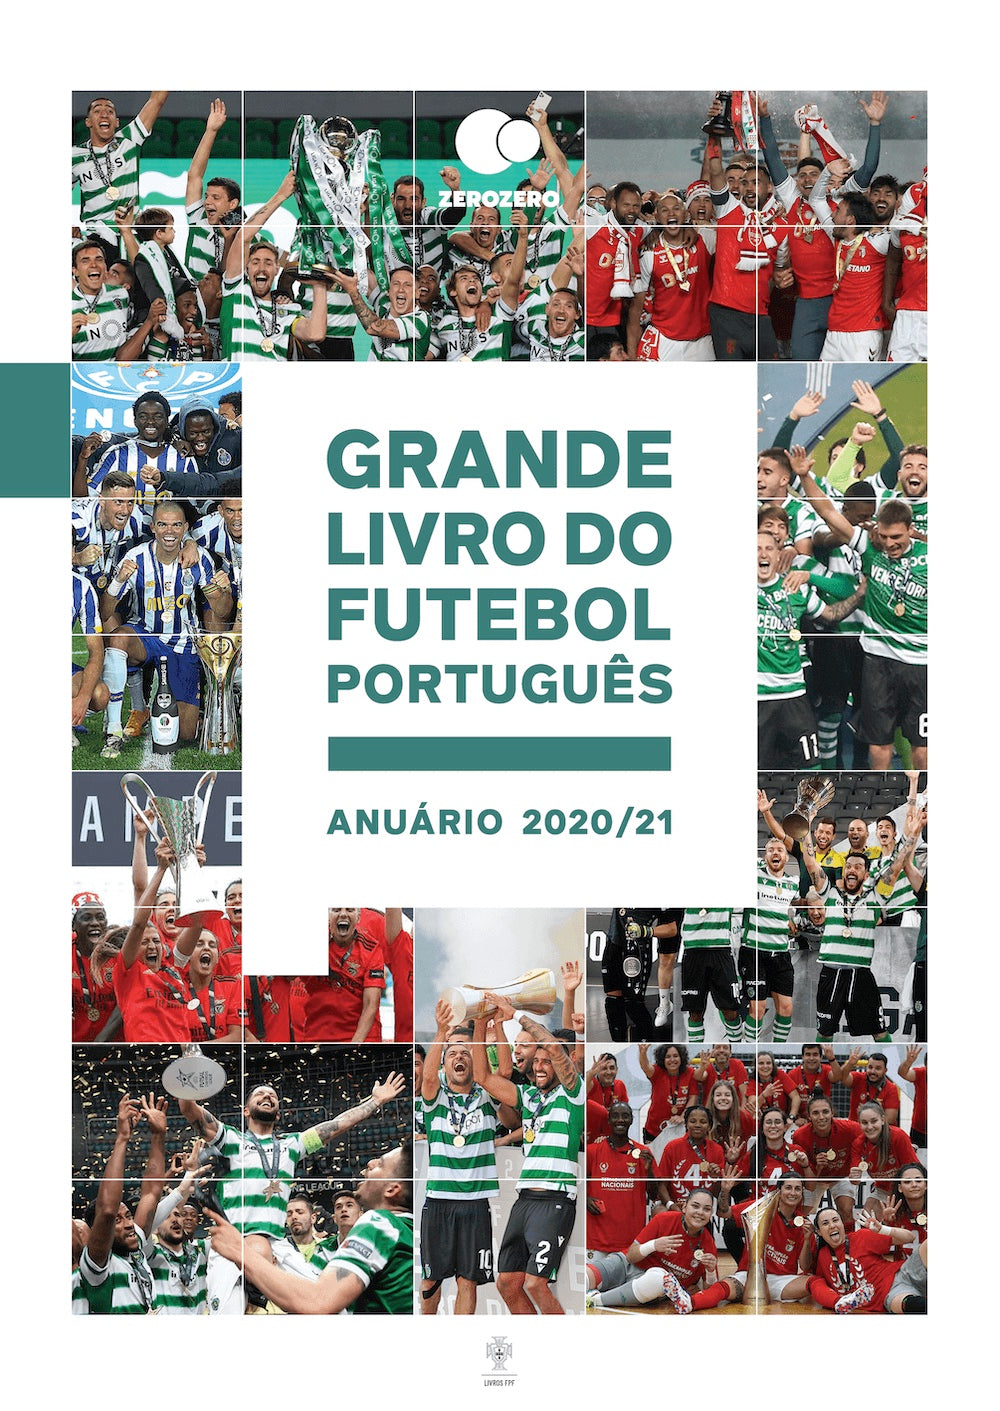 Dicionário da Língua Portuguesa - Futebol Clube do Porto - Vários, Vários -  Compra Livros na